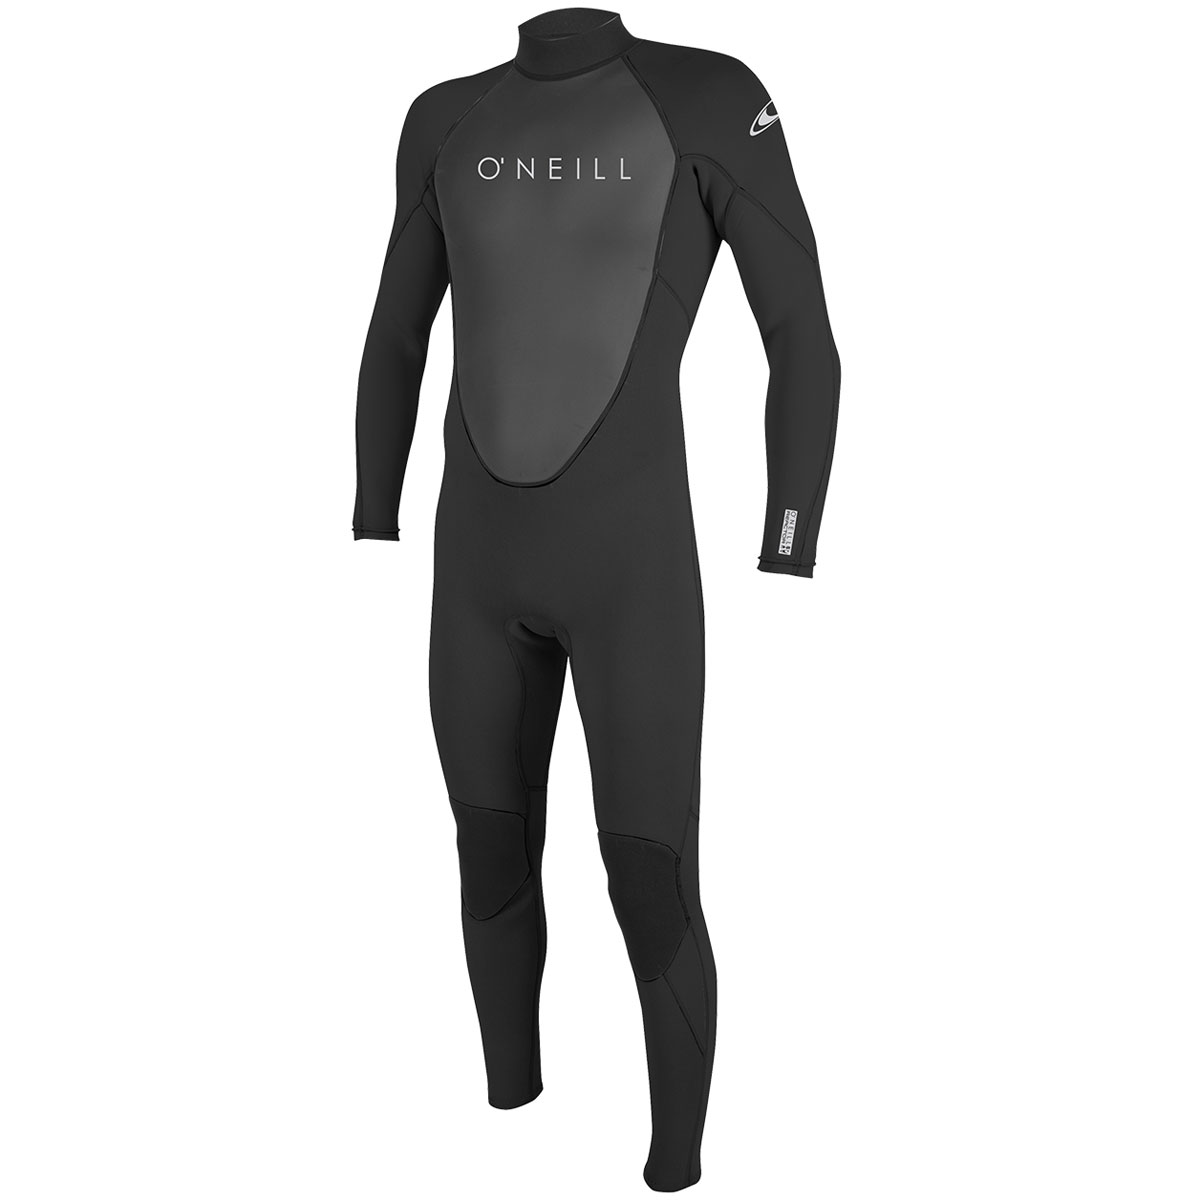 The best scuba wetsuit 3mm